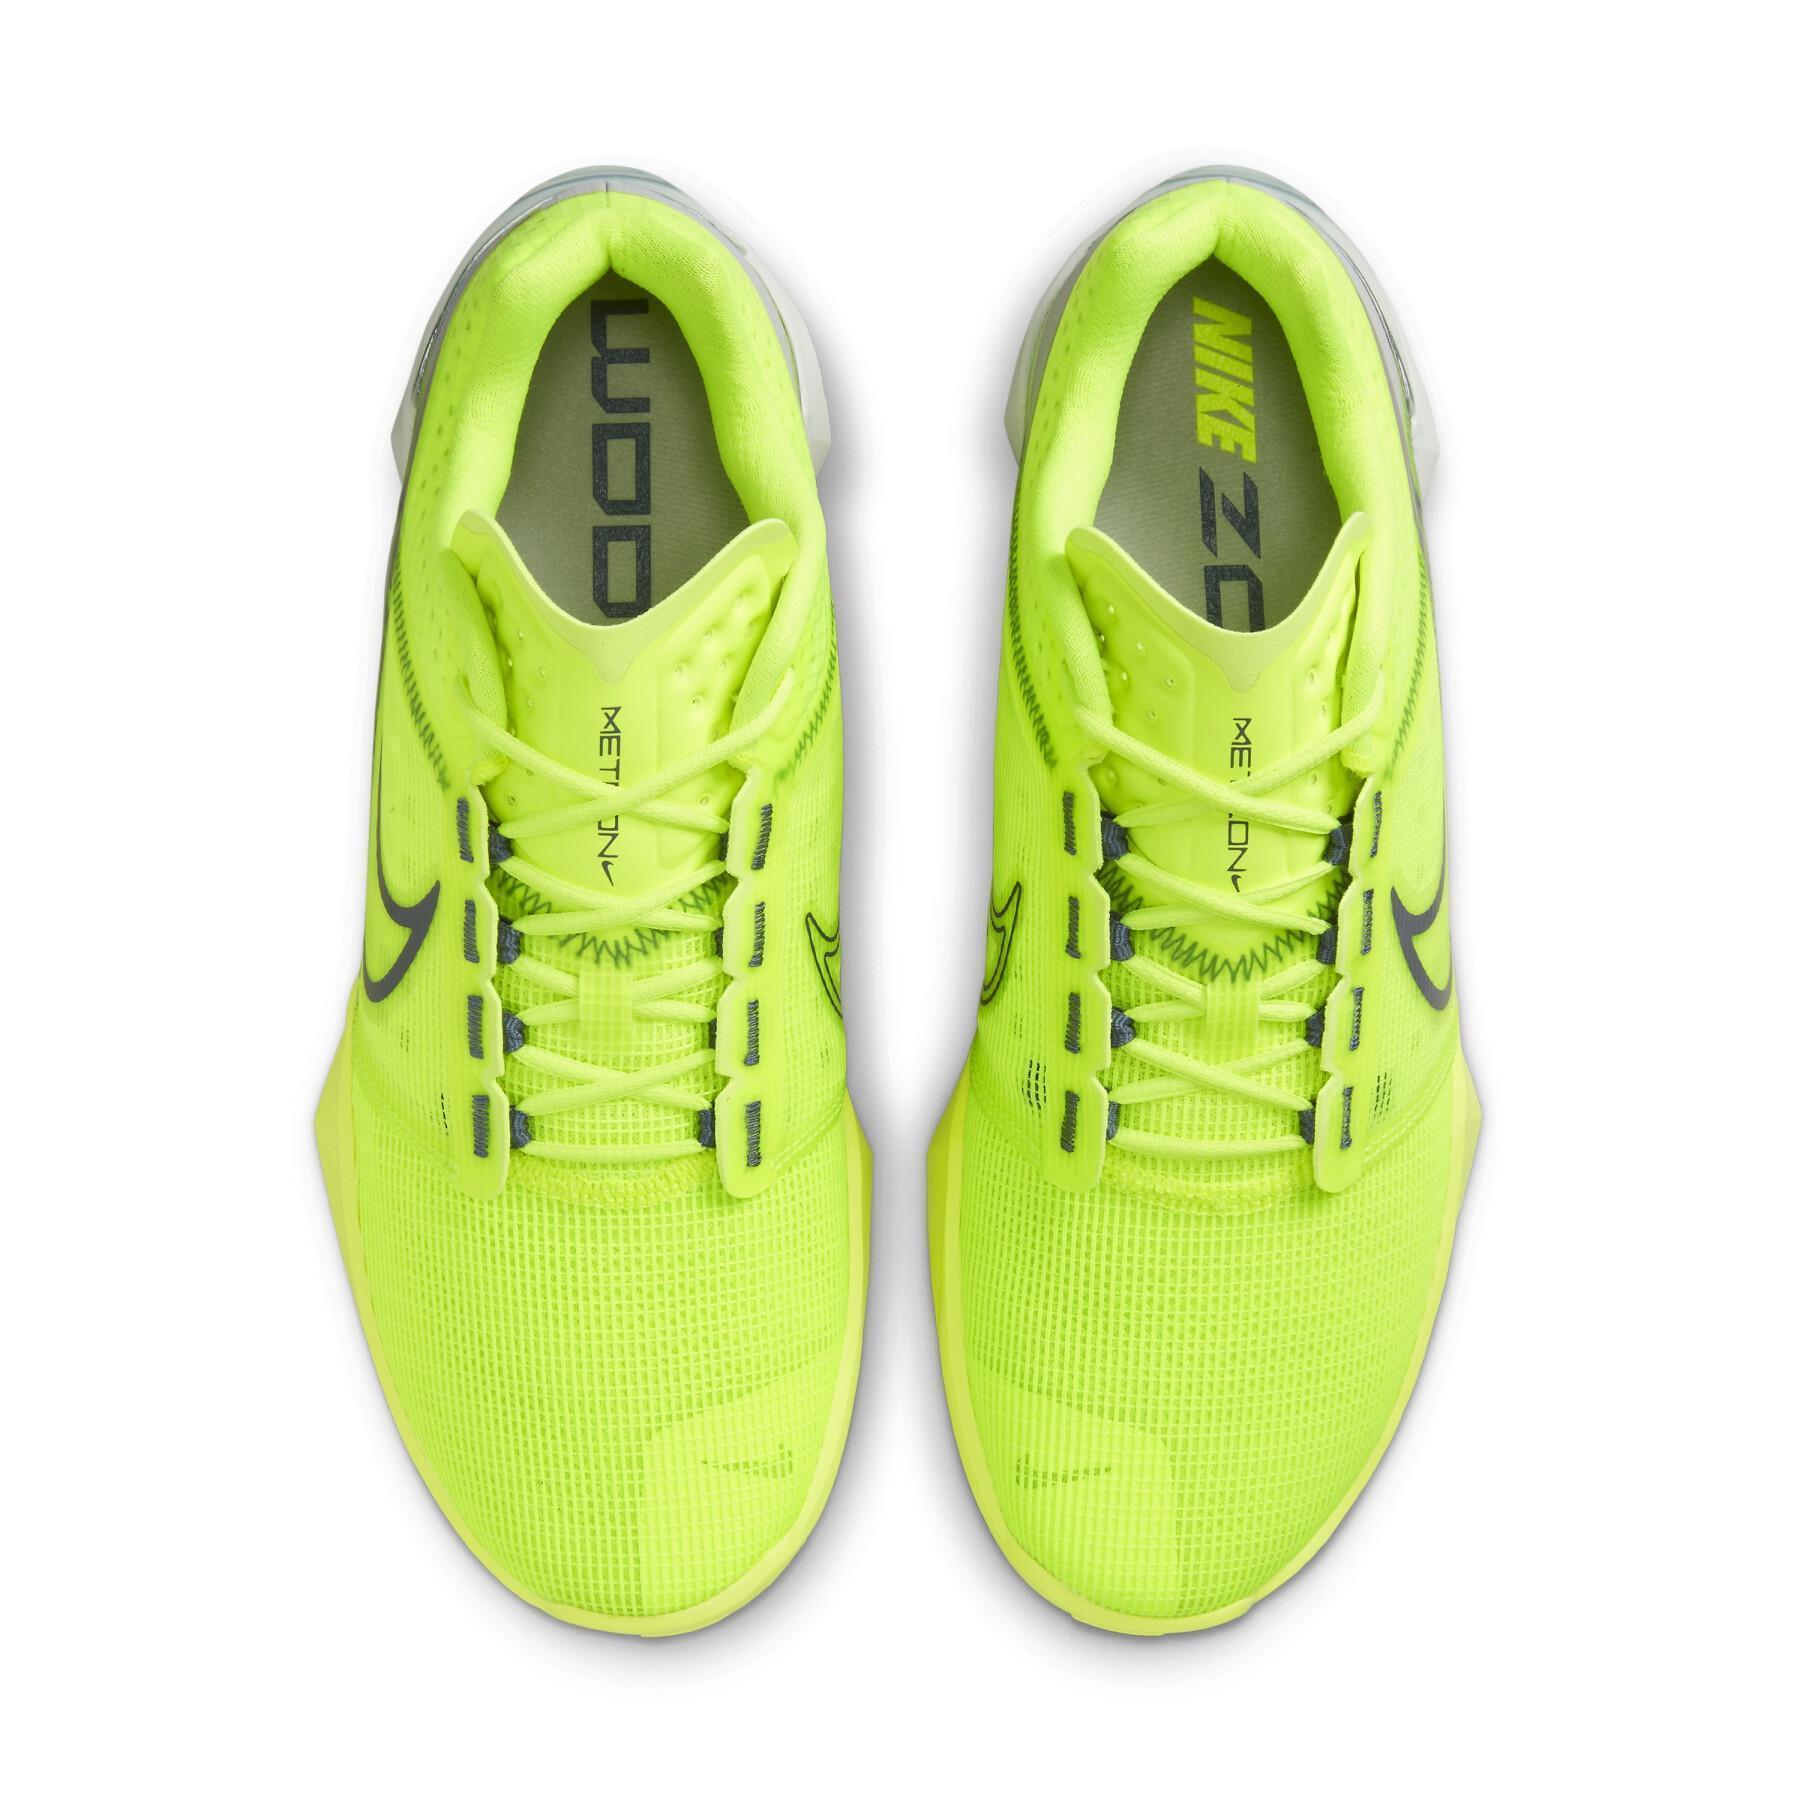 Schuhe indoor Nike Zoom Metcon Turbo 2